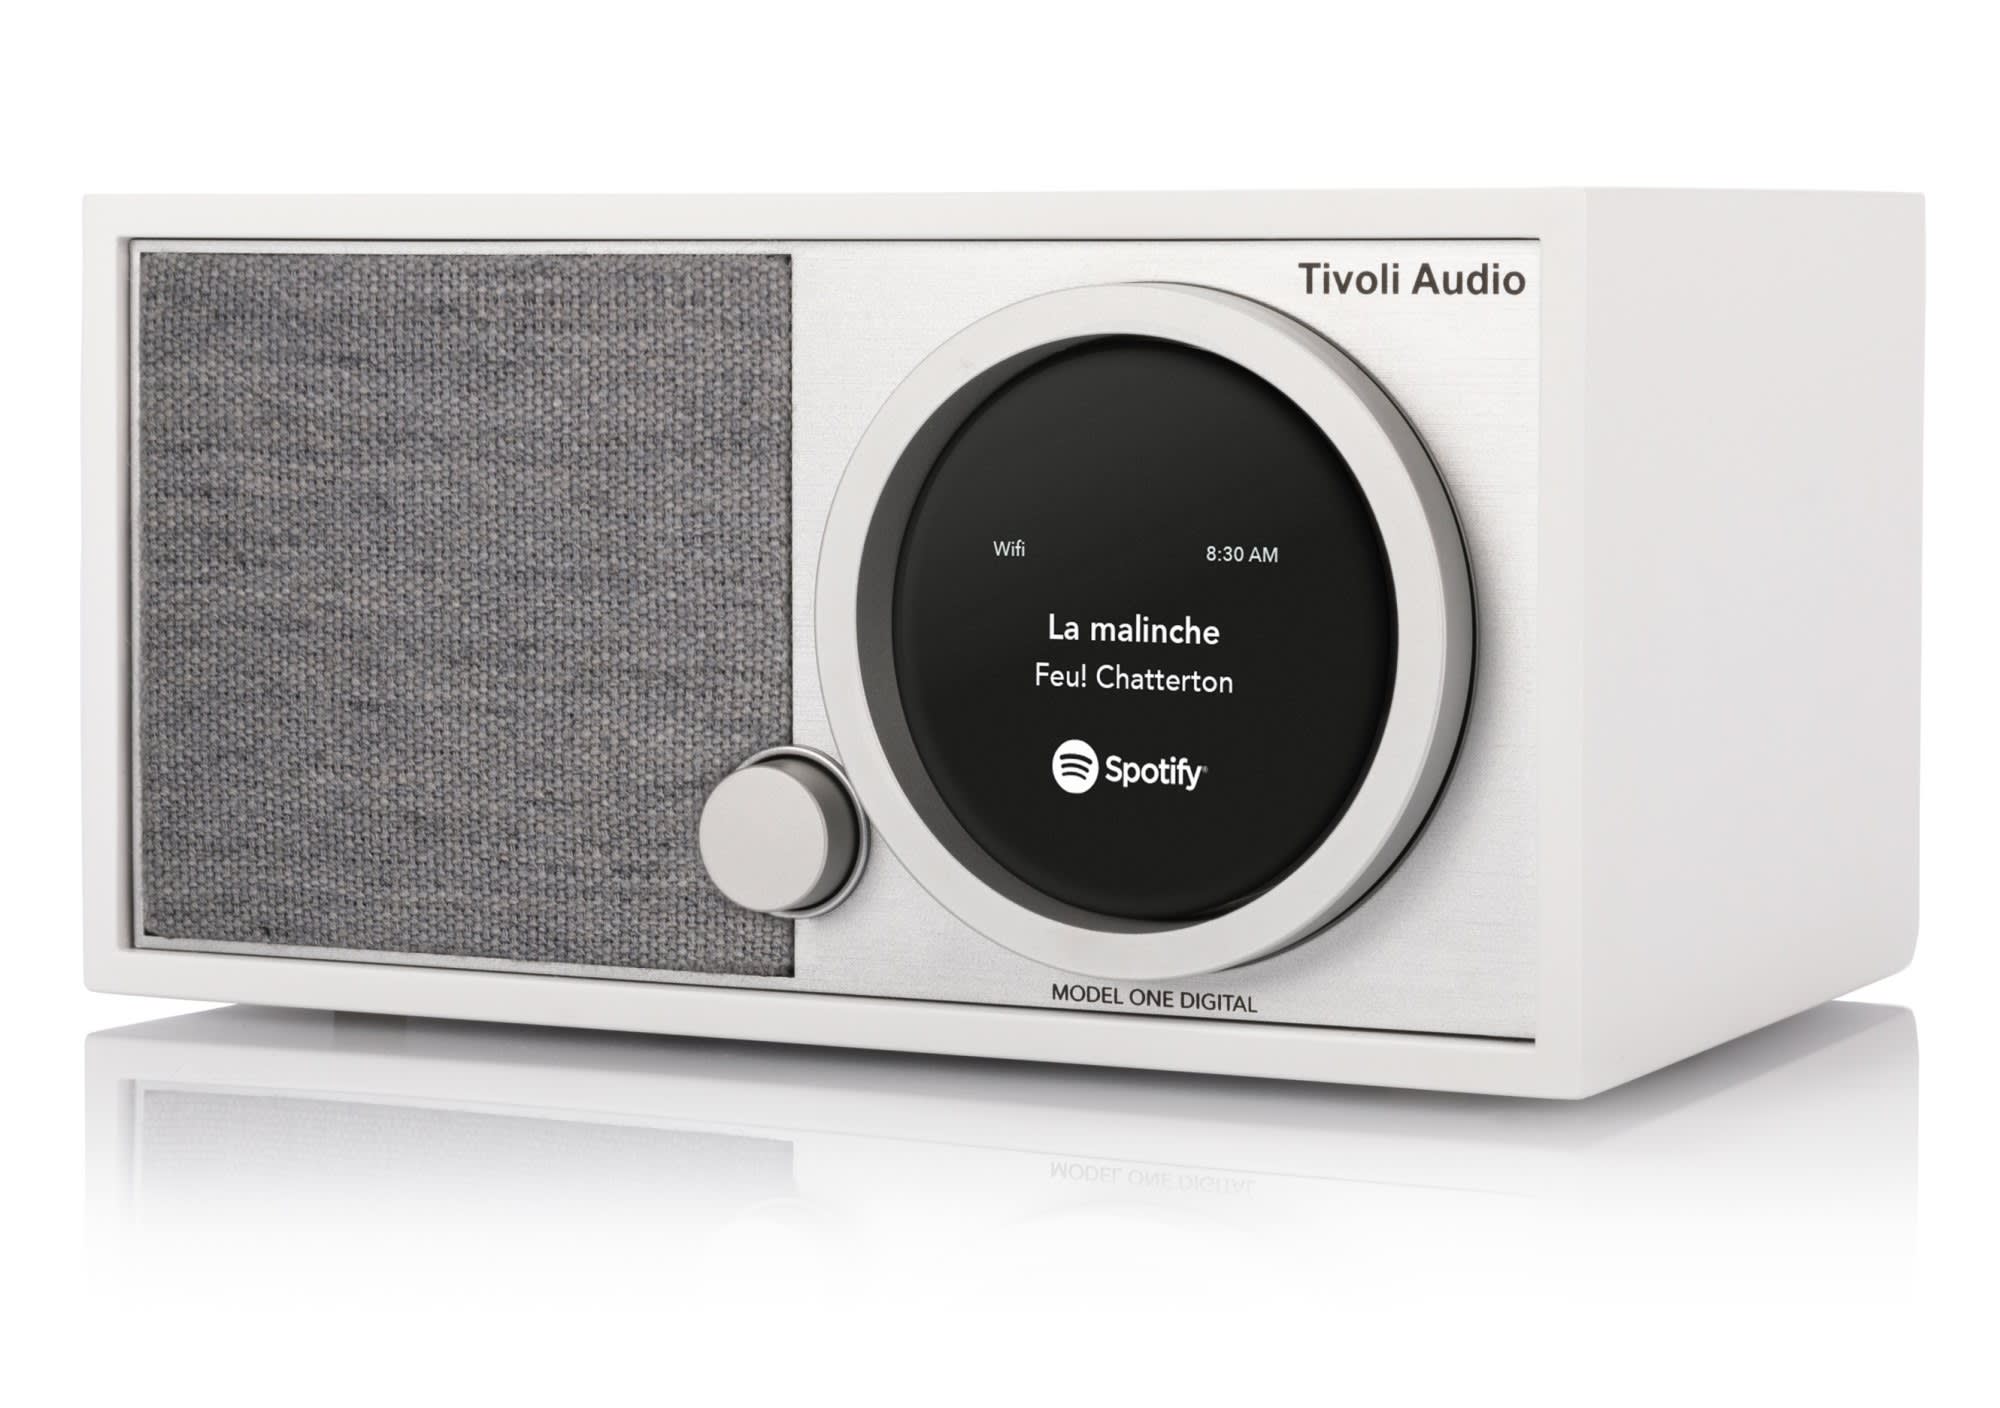 Tivoli Audio Model One Digital valkoinen pöytäradio | Karkkainen.com